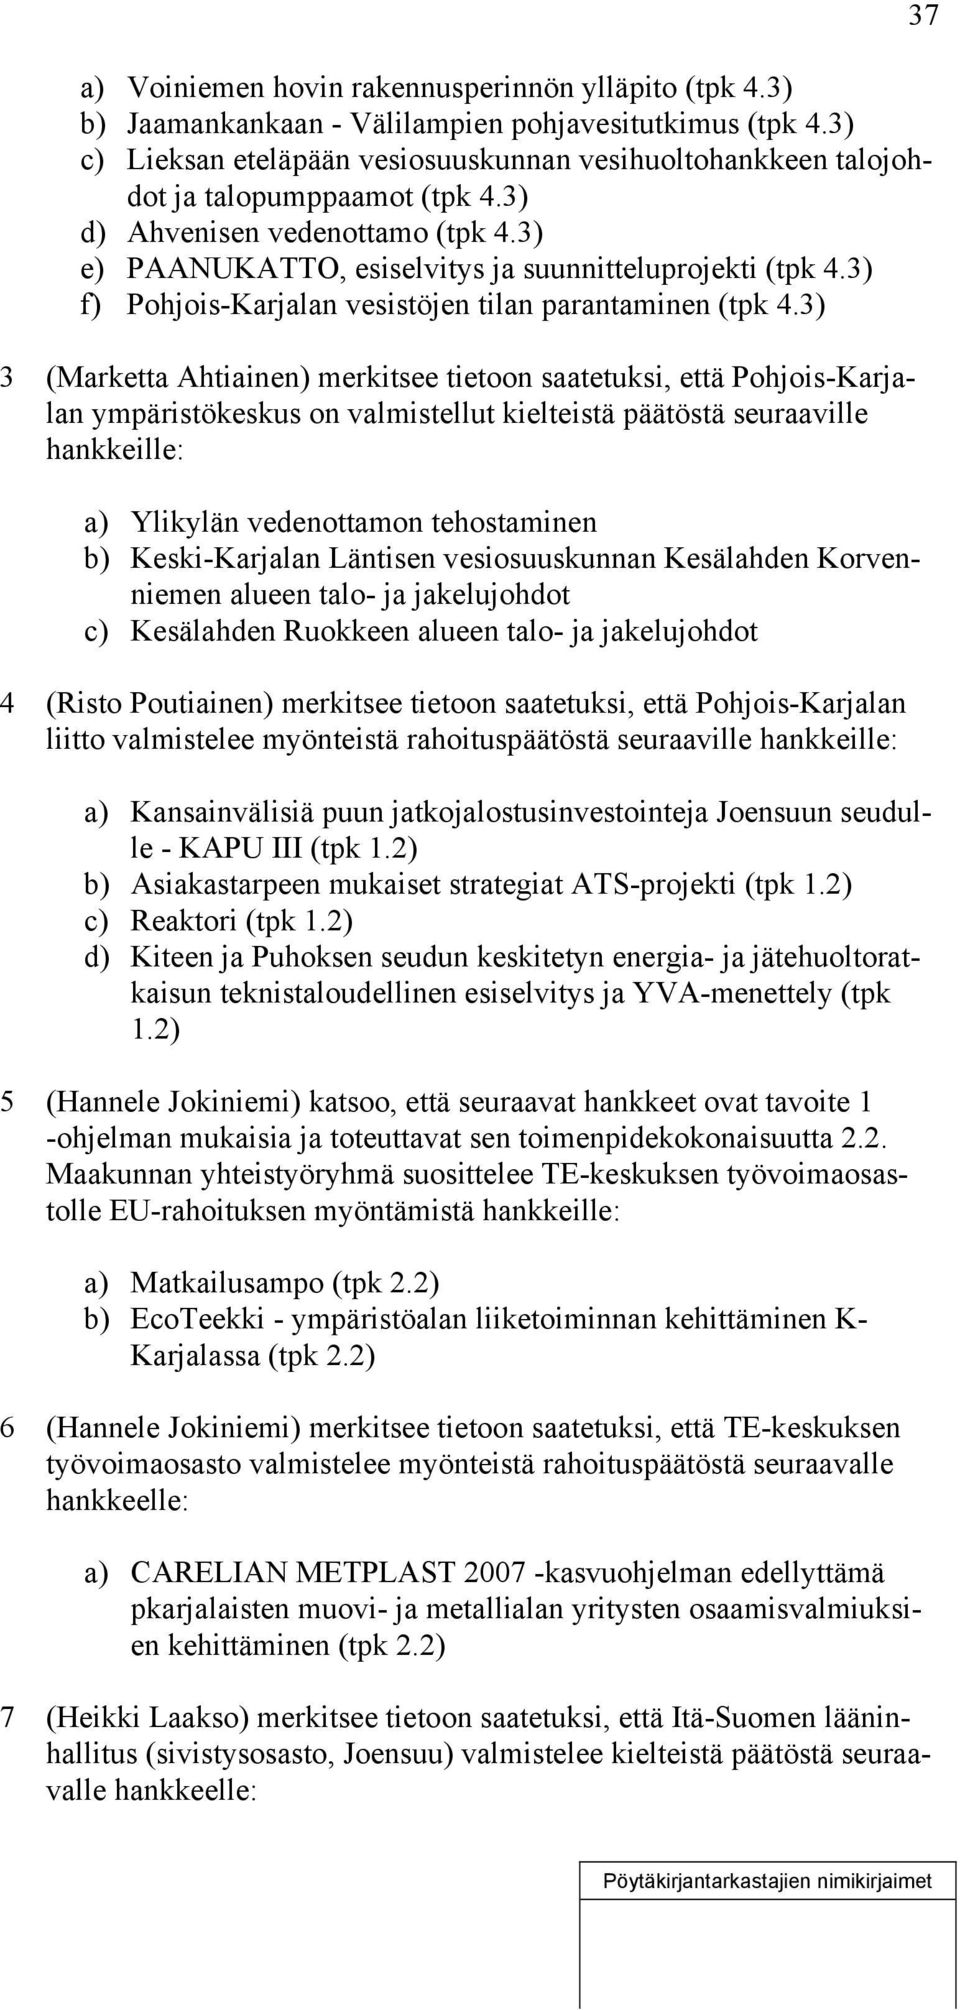 3) f) Pohjois-Karjalan vesistöjen tilan parantaminen (tpk 4.